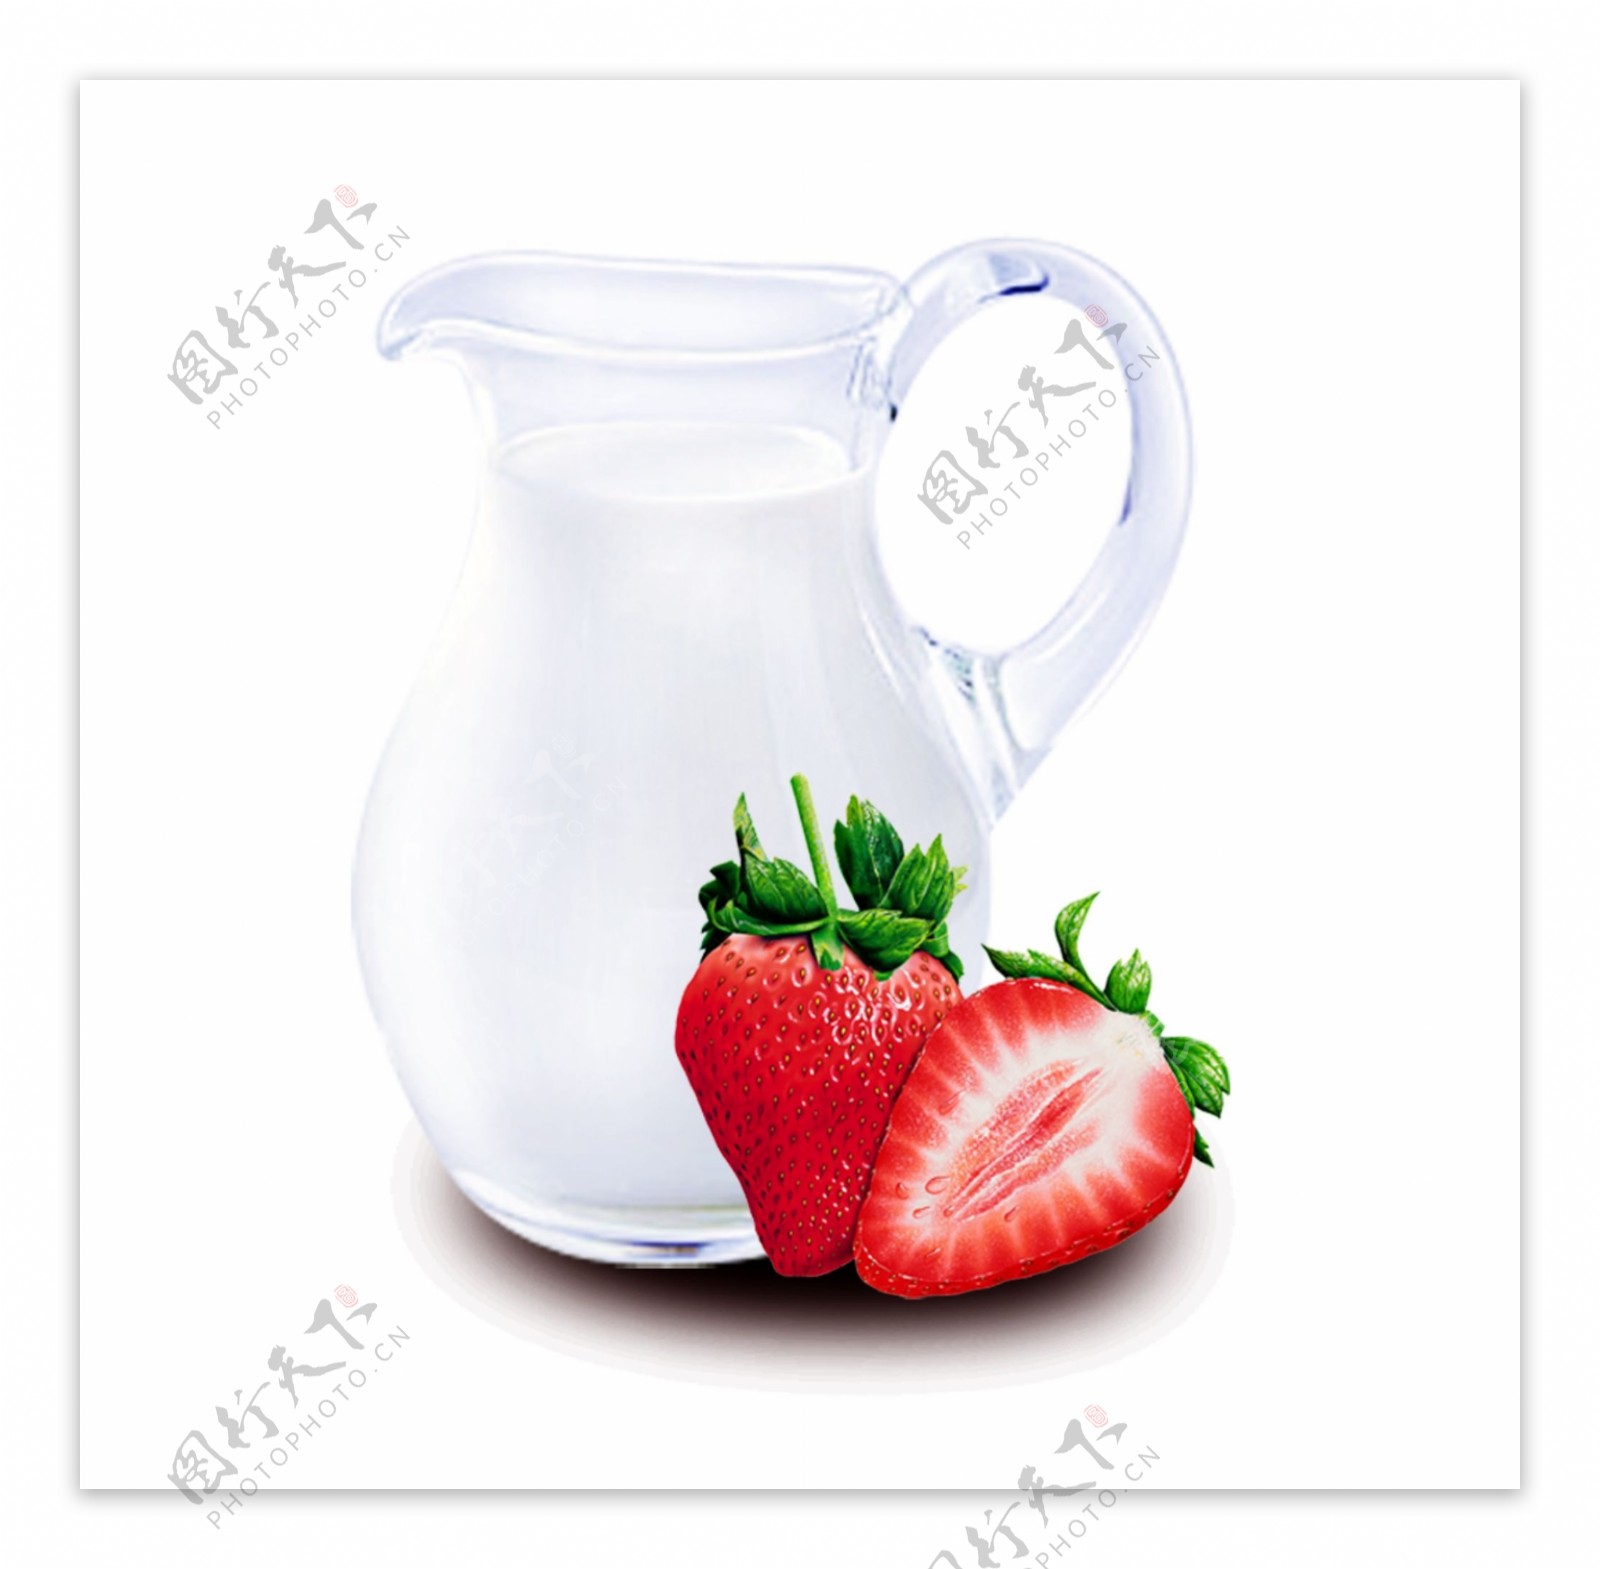 草莓牛奶杯子图片